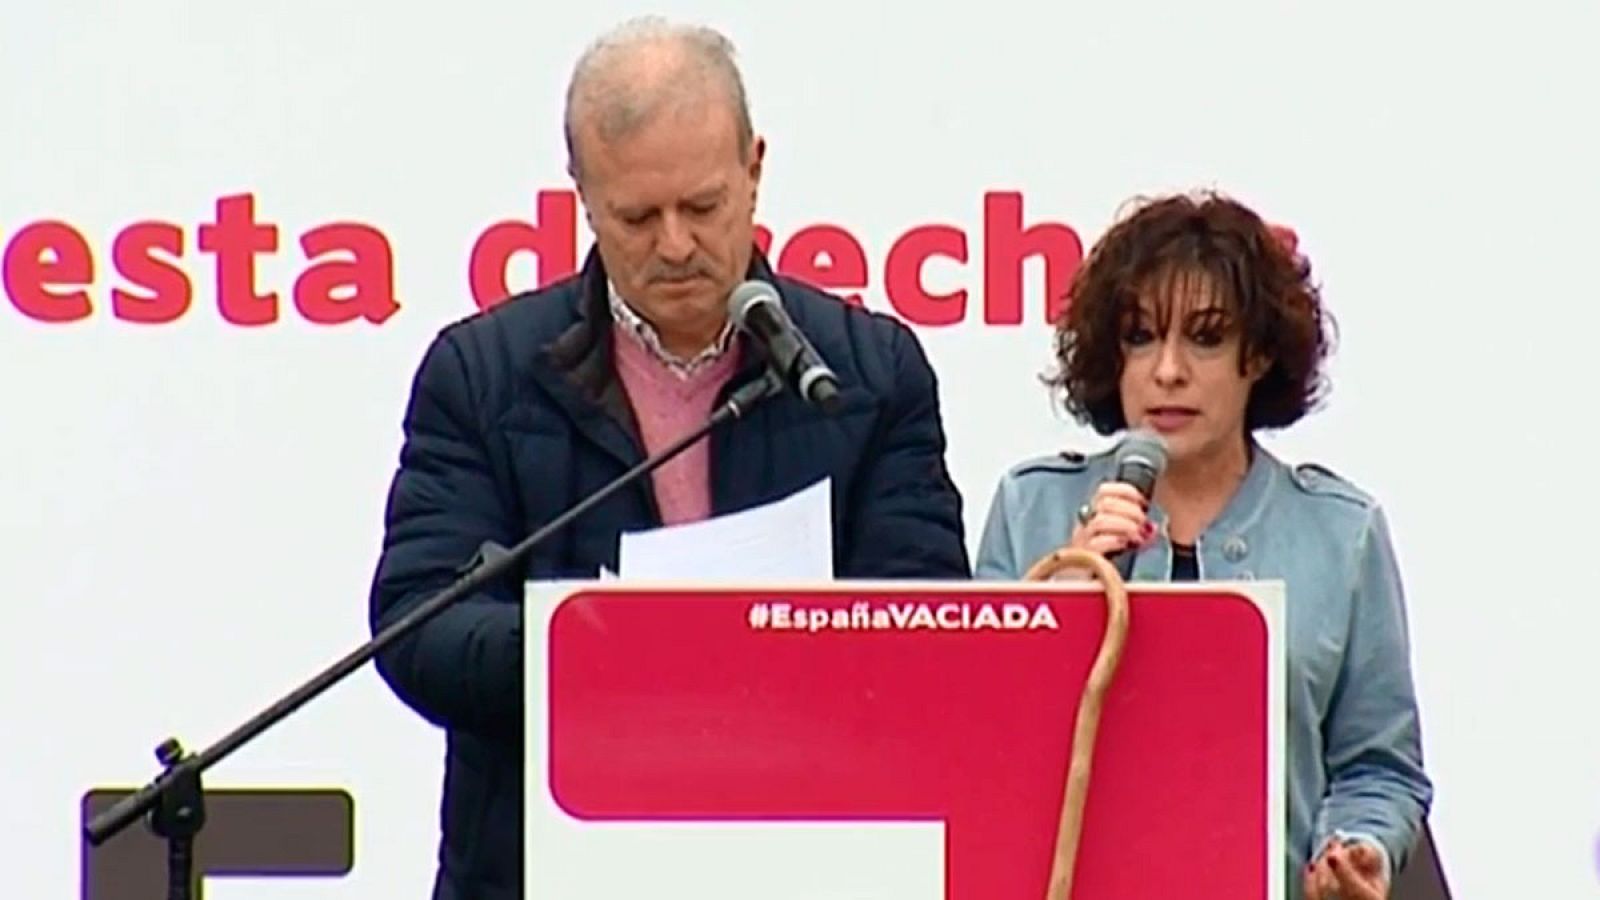 Manifestación: La 'España vaciada' pide a los políticos más atención a los territorios que pierden población en la lectura de su manifiesto